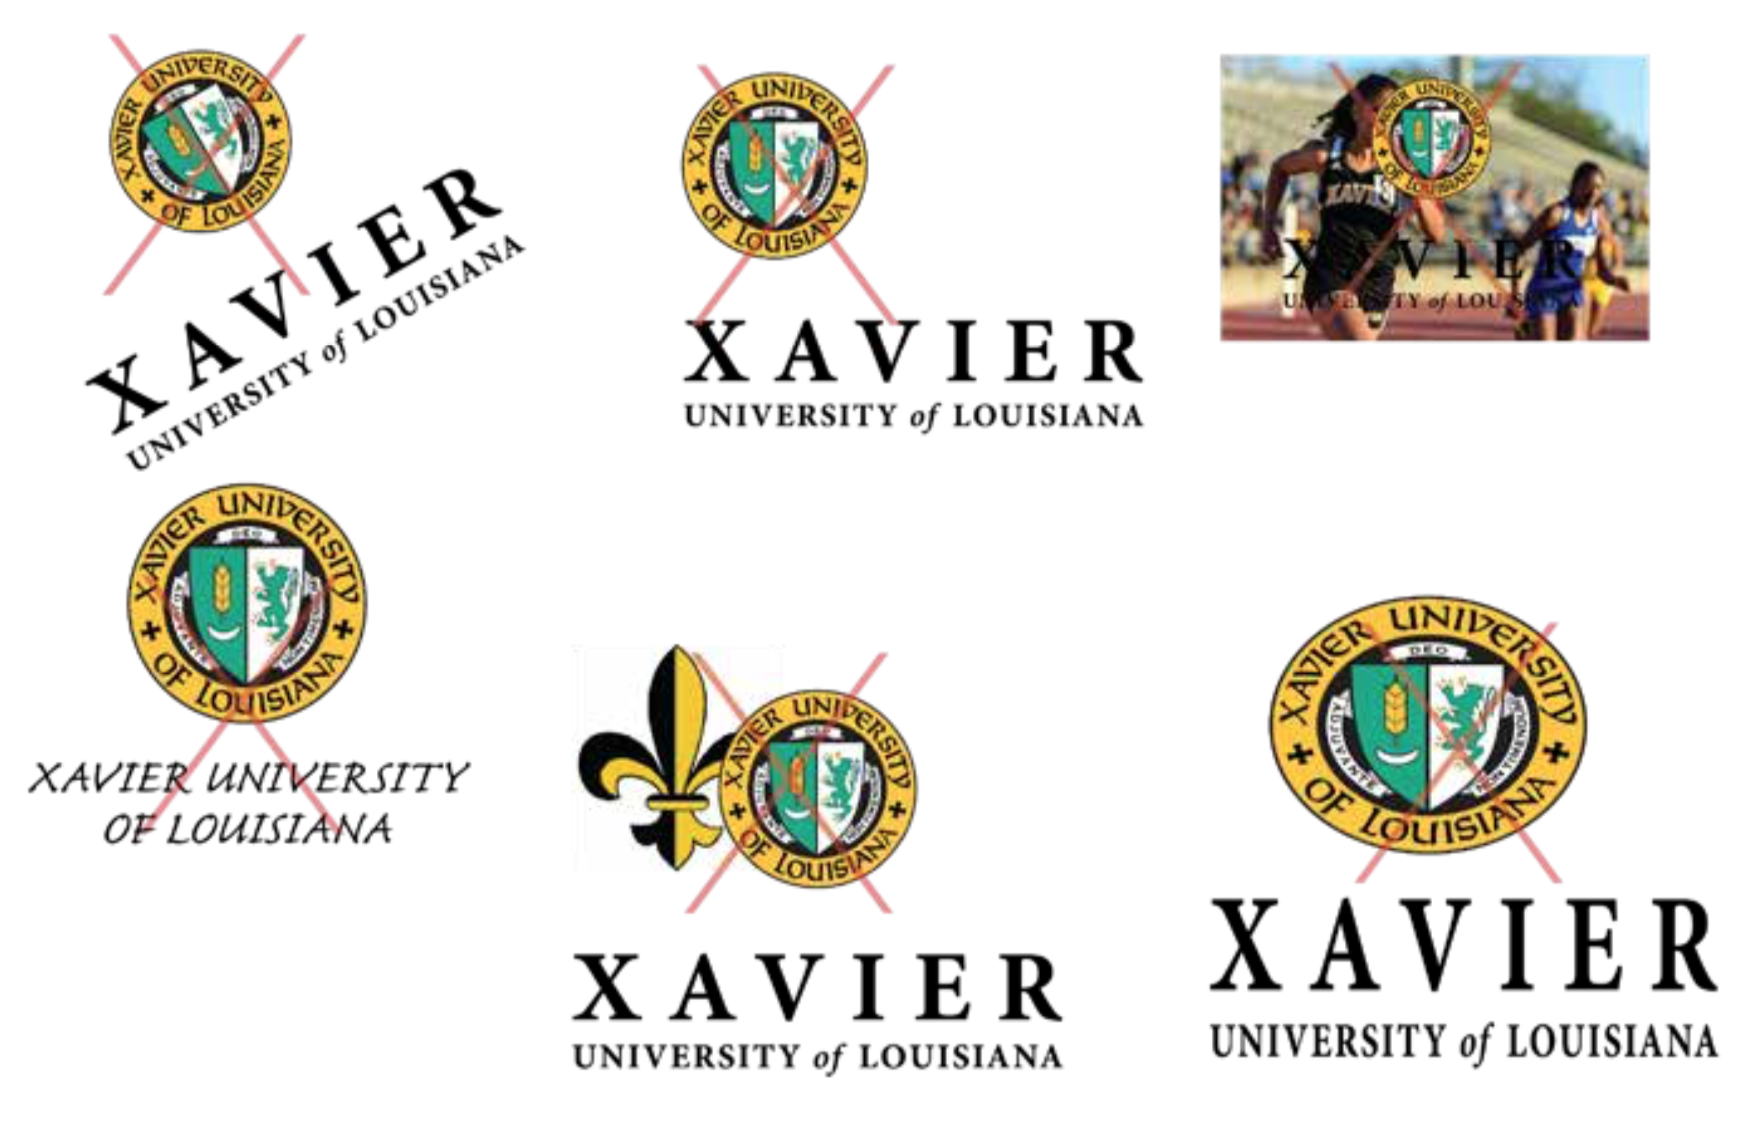  Xavier University of Louisiana Primary Logo Heavy Duty